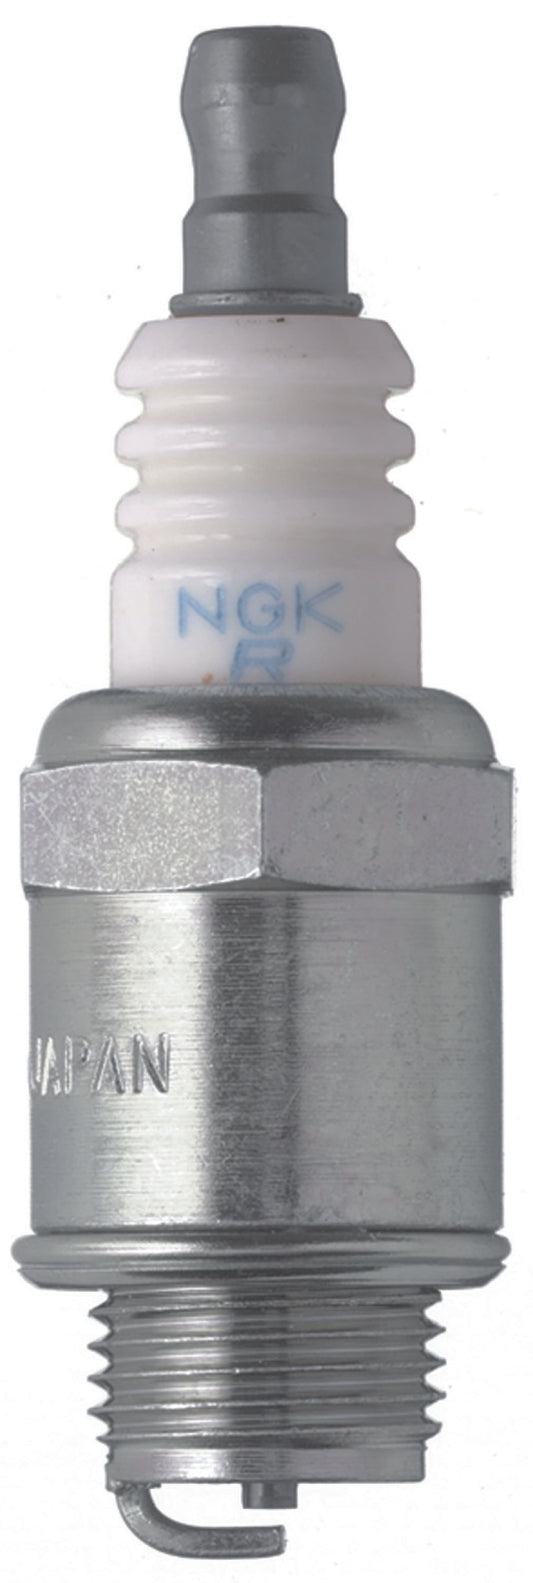 NGK Standard Spark Plug Box of 10 (BMR2A SOLID)